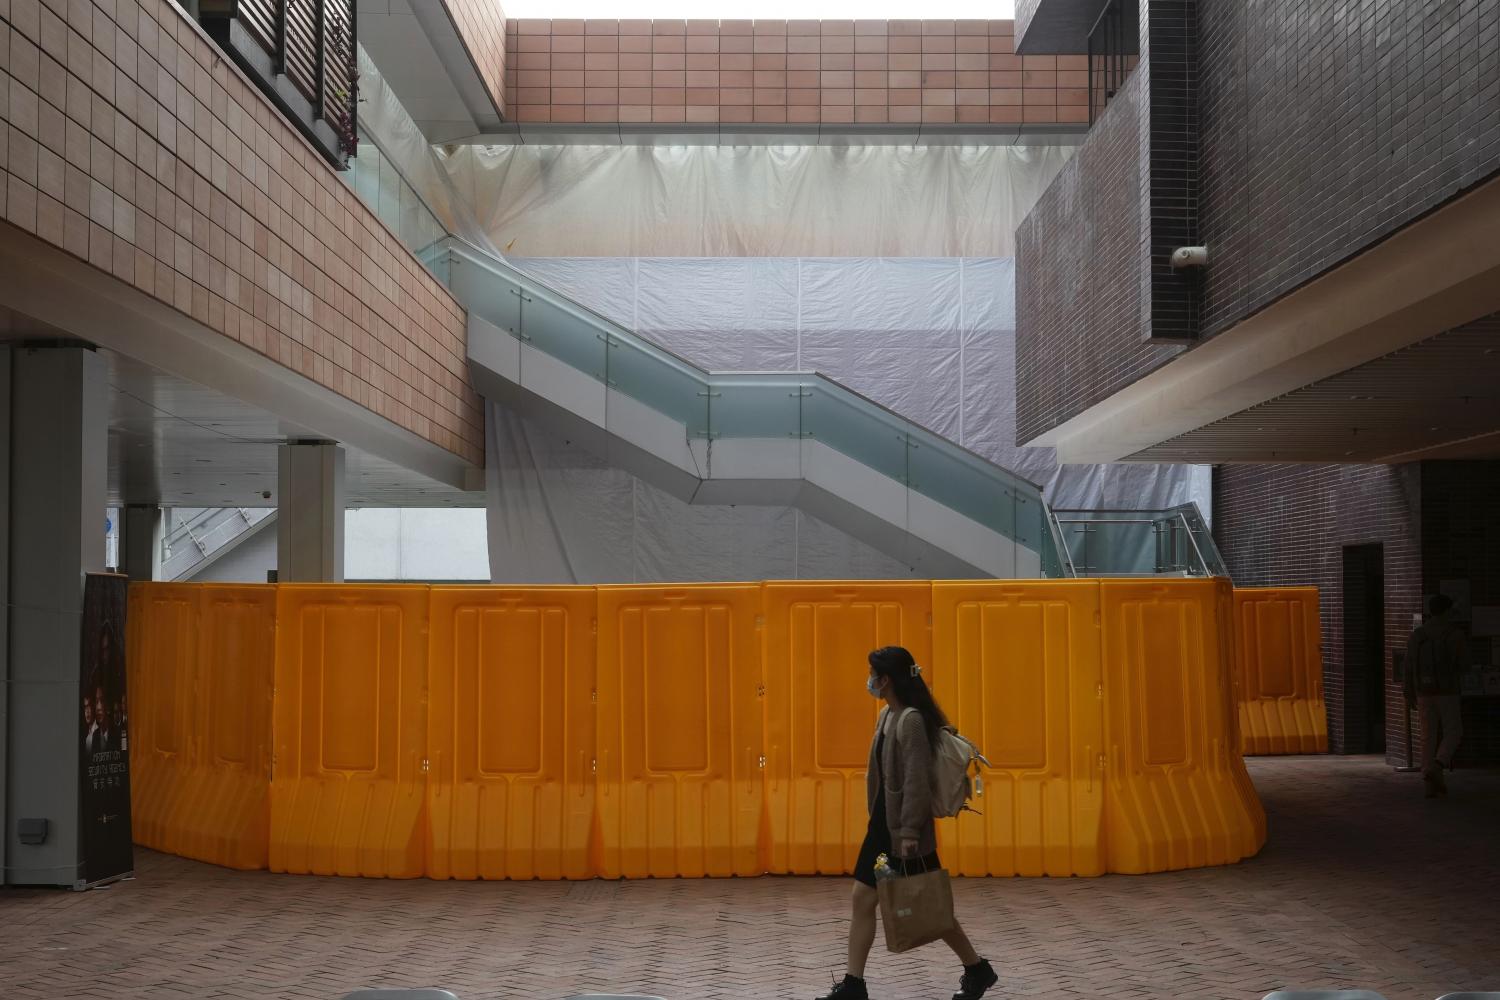 Der frühere Standort der "Säule der Schande" an einer Universität Hongkongs nachdem das Denkmal entfernt wurde 